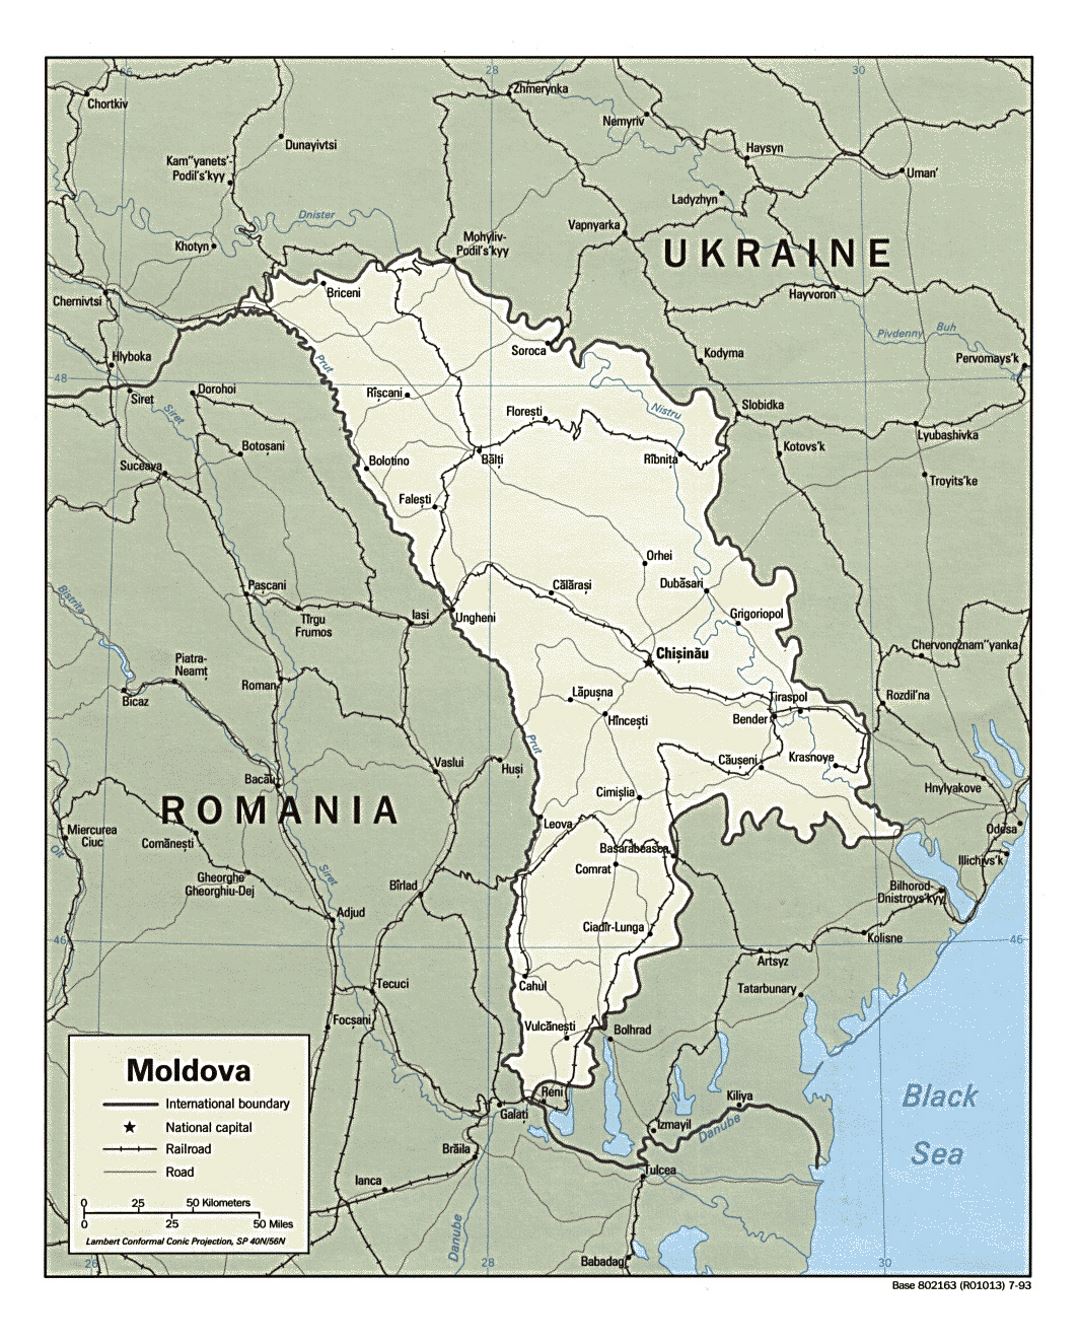 Detallado mapa político de Moldavia con carreteras, ferrocarriles y principales ciudades - 1993